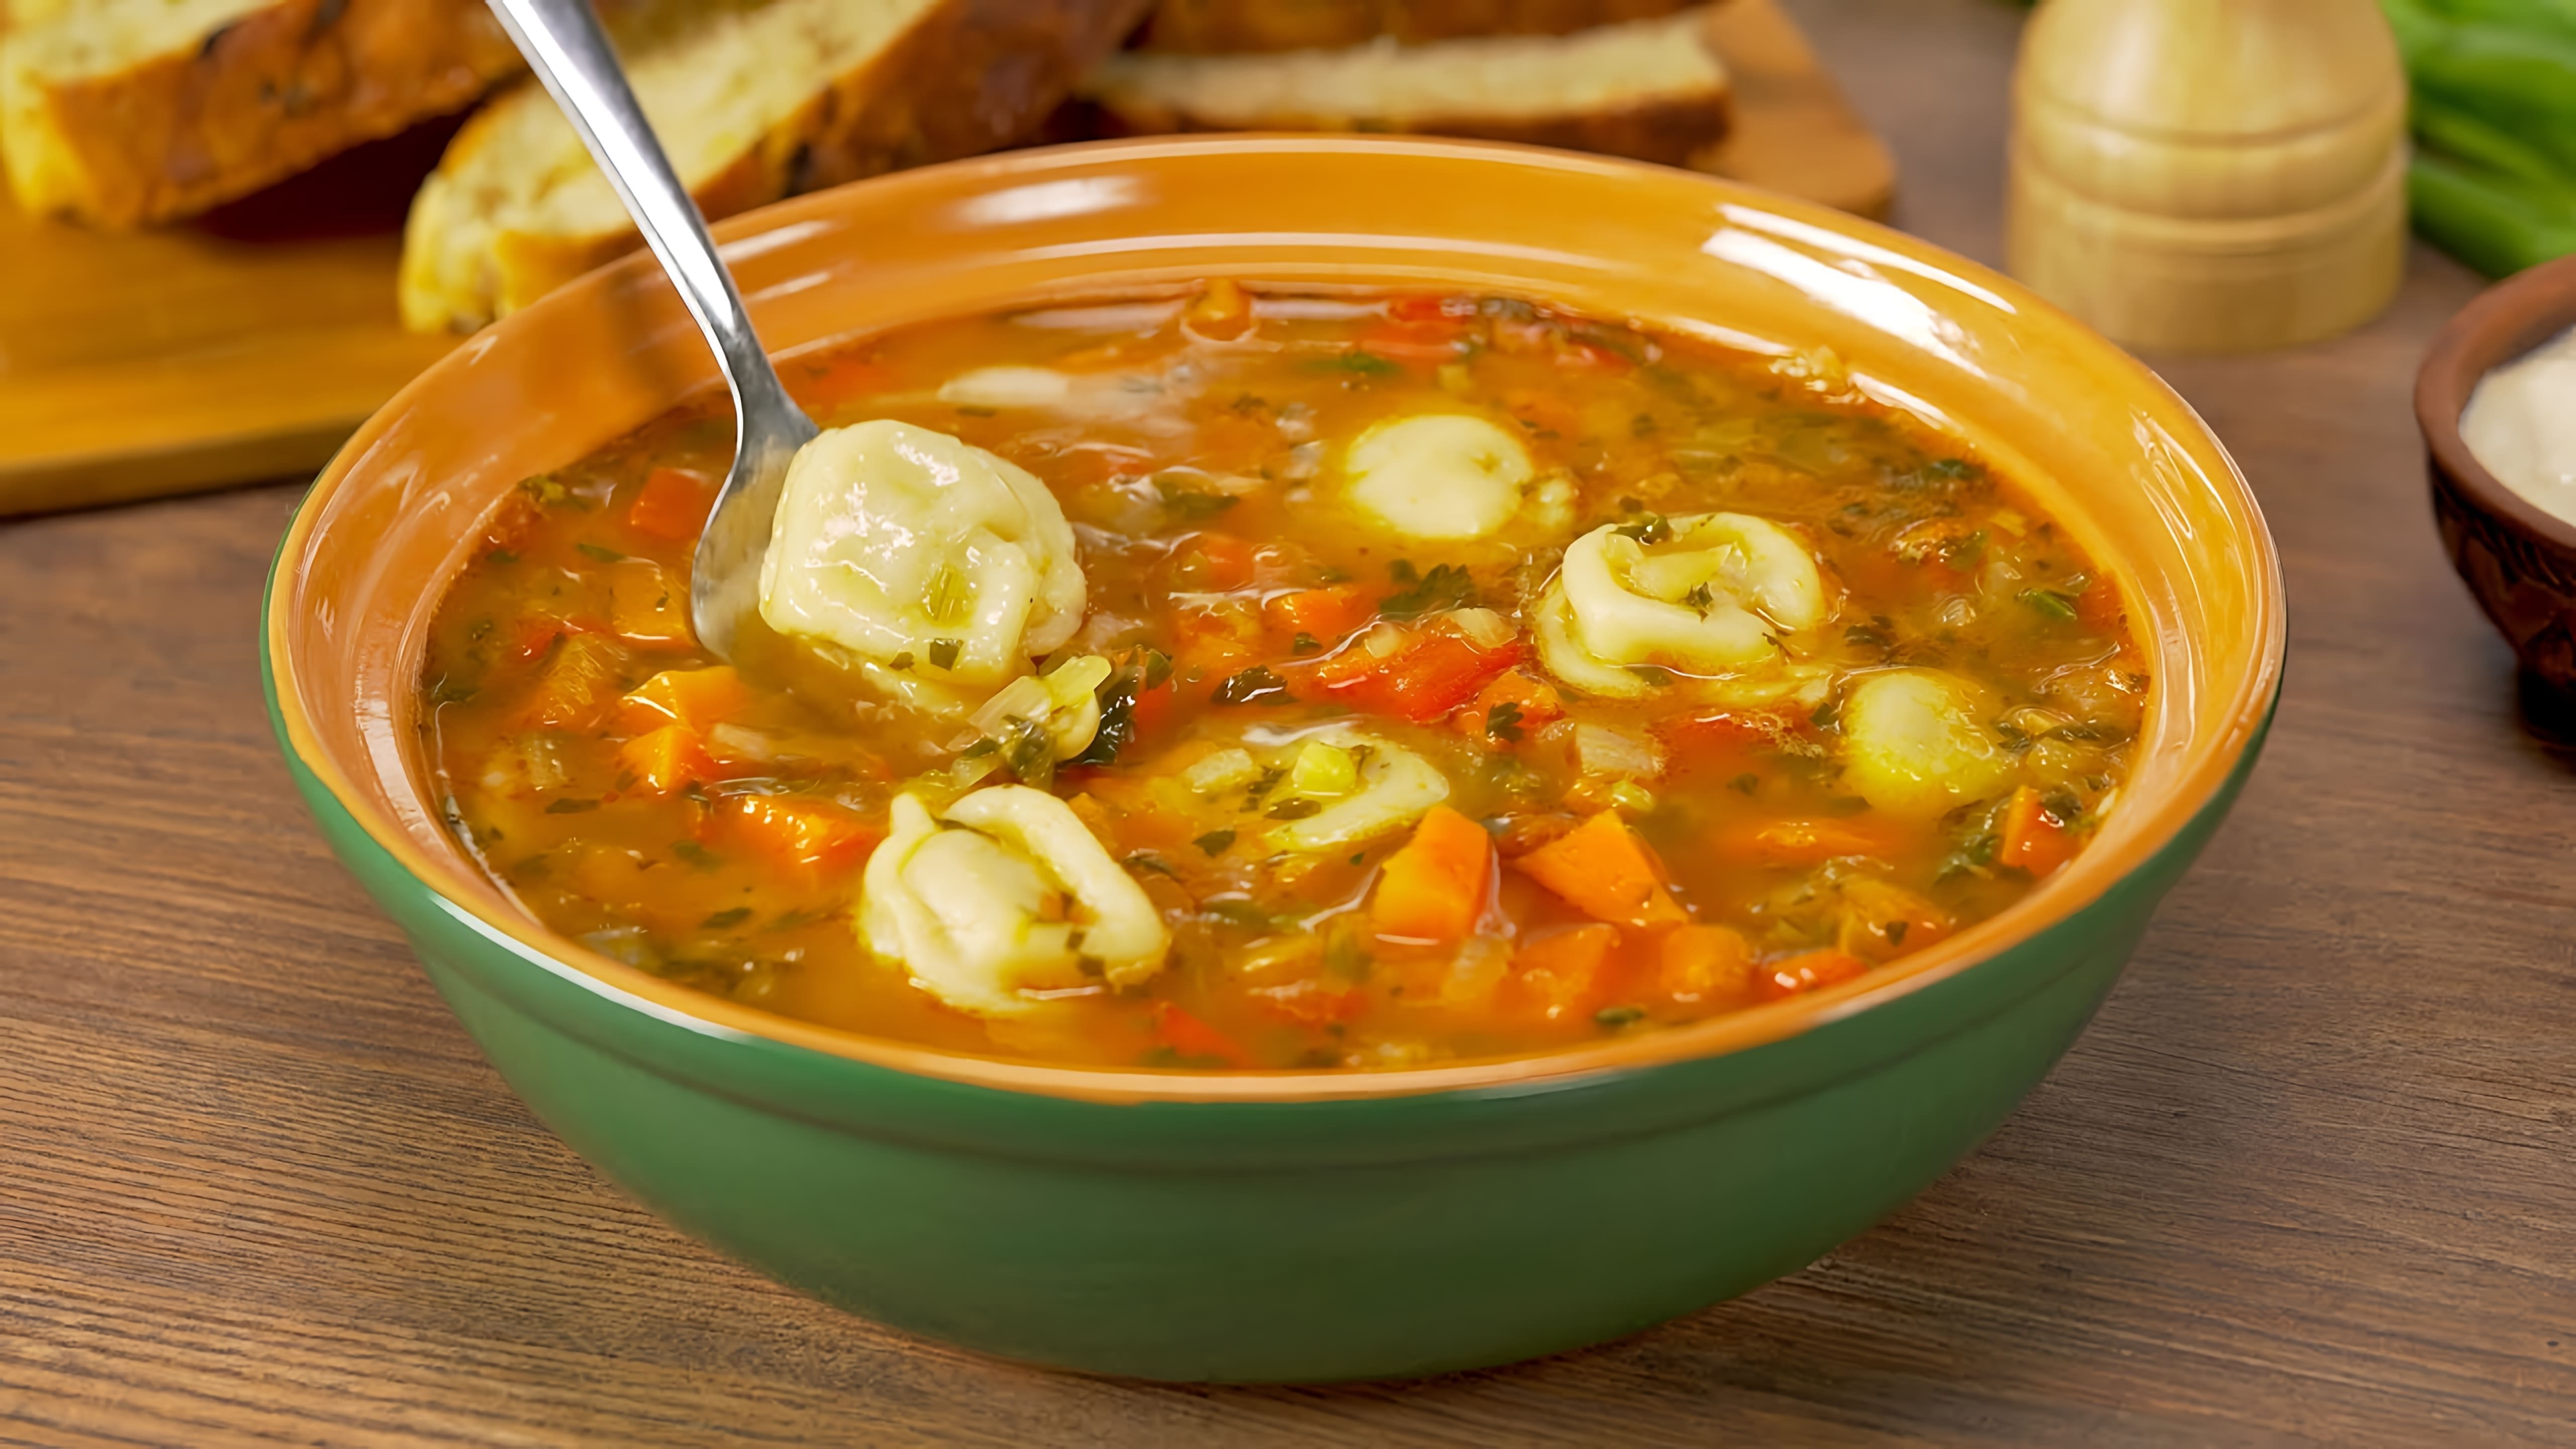 В этом видео демонстрируется рецепт приготовления узбекского супа с пельменями и овощами